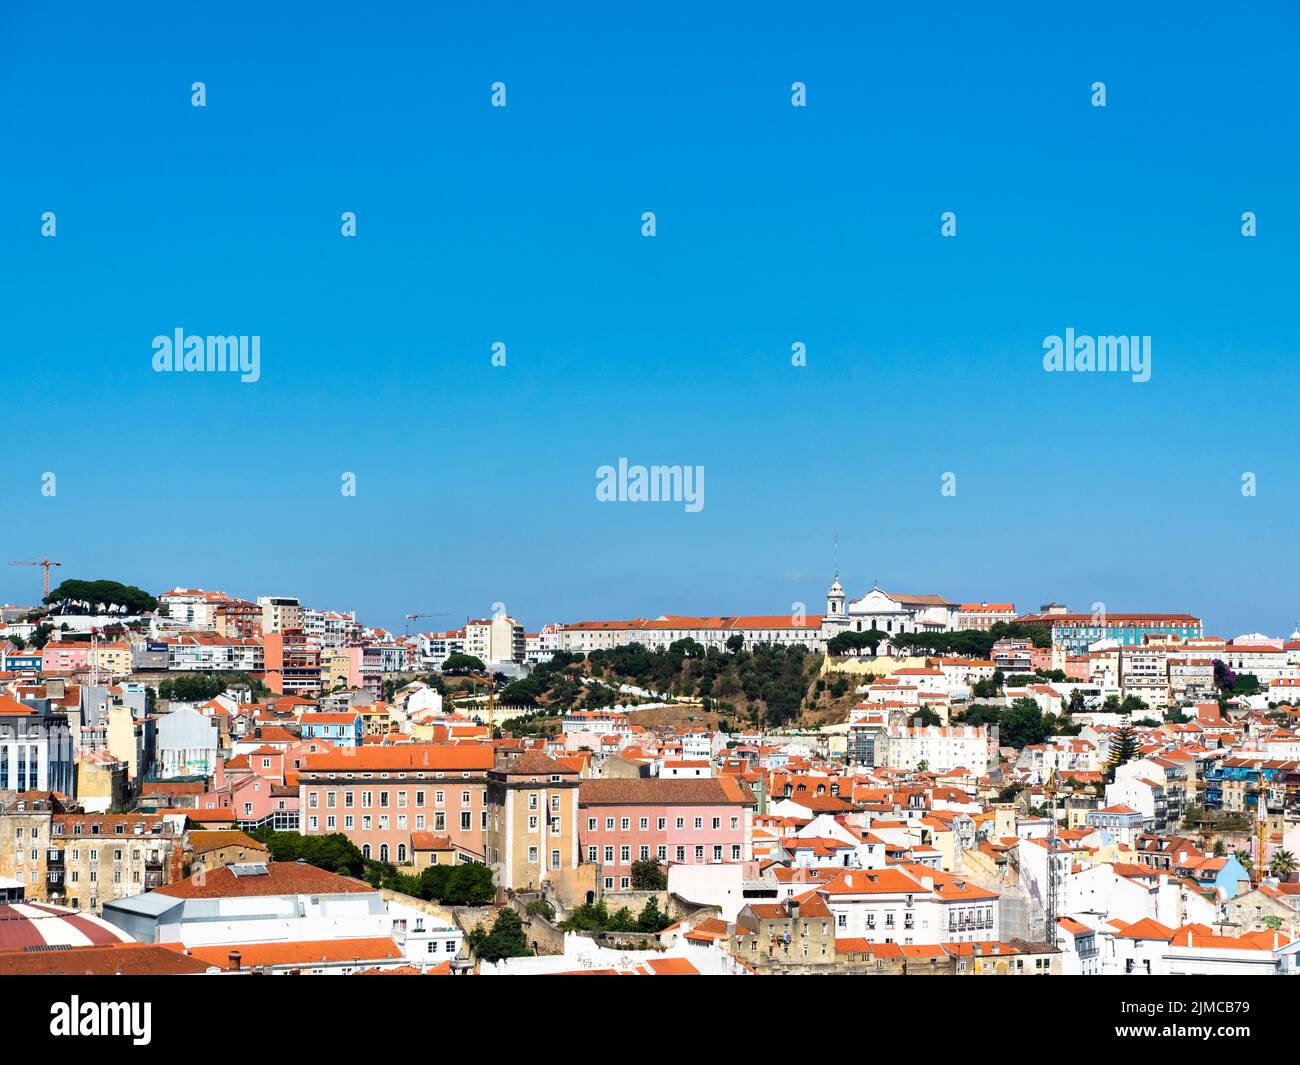 View from the Miradouro de Sao Pedro de Alcantara in the upper town of Bairro Alto, Lisbon, Portugal Stock Photo